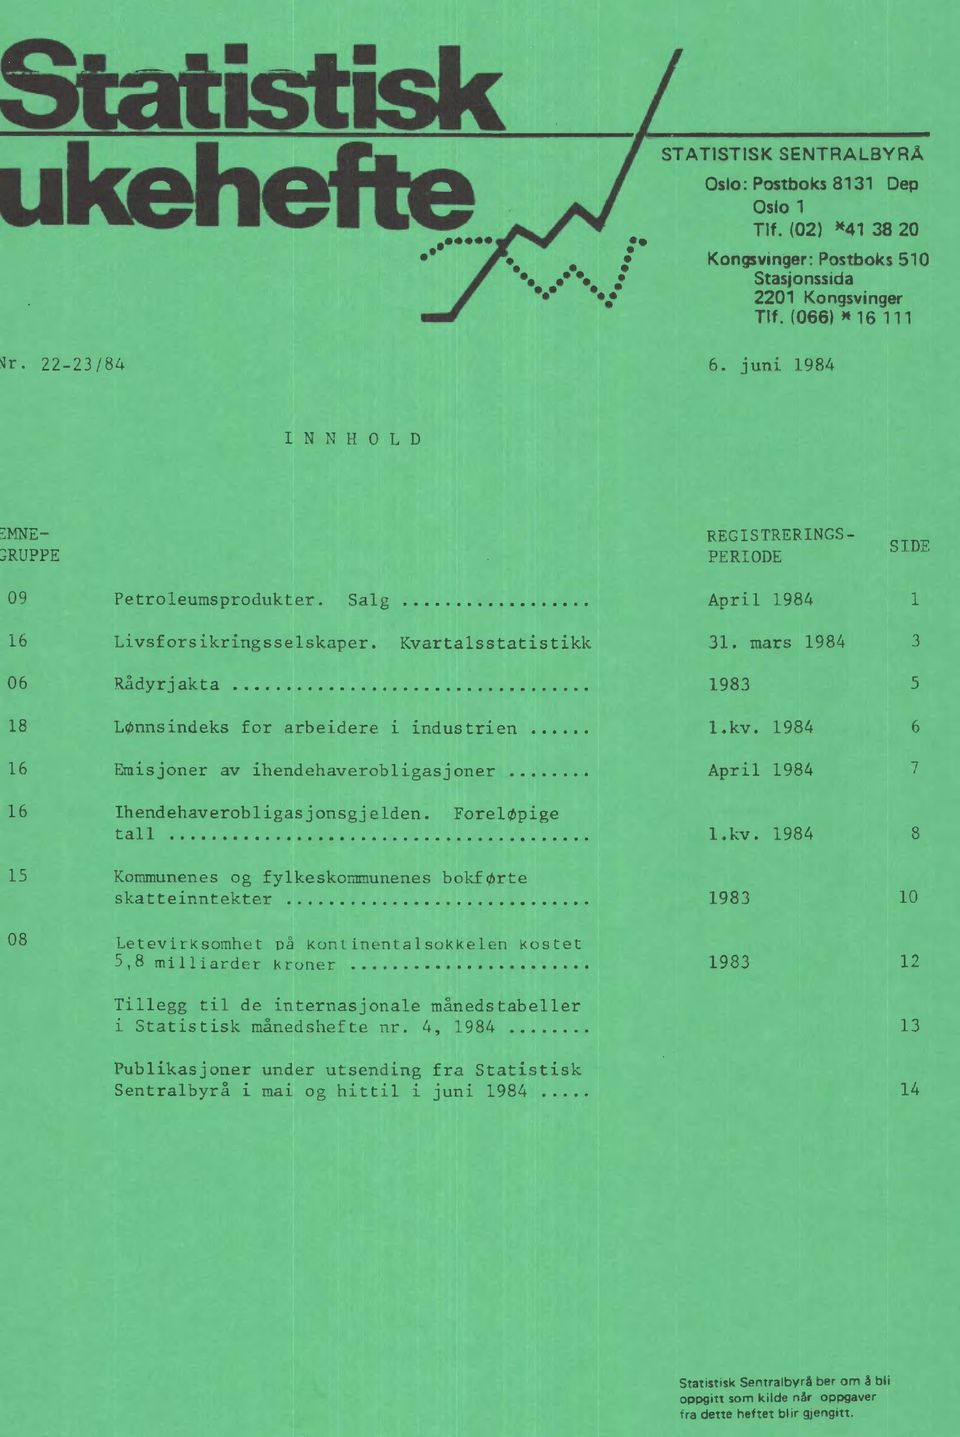 1984 6 16 Emisjoner av ihendehaverobligasjoner April 1984 7 16 Ihendehaverobligasjonsgjelden. ForelØpige tall l.kv.